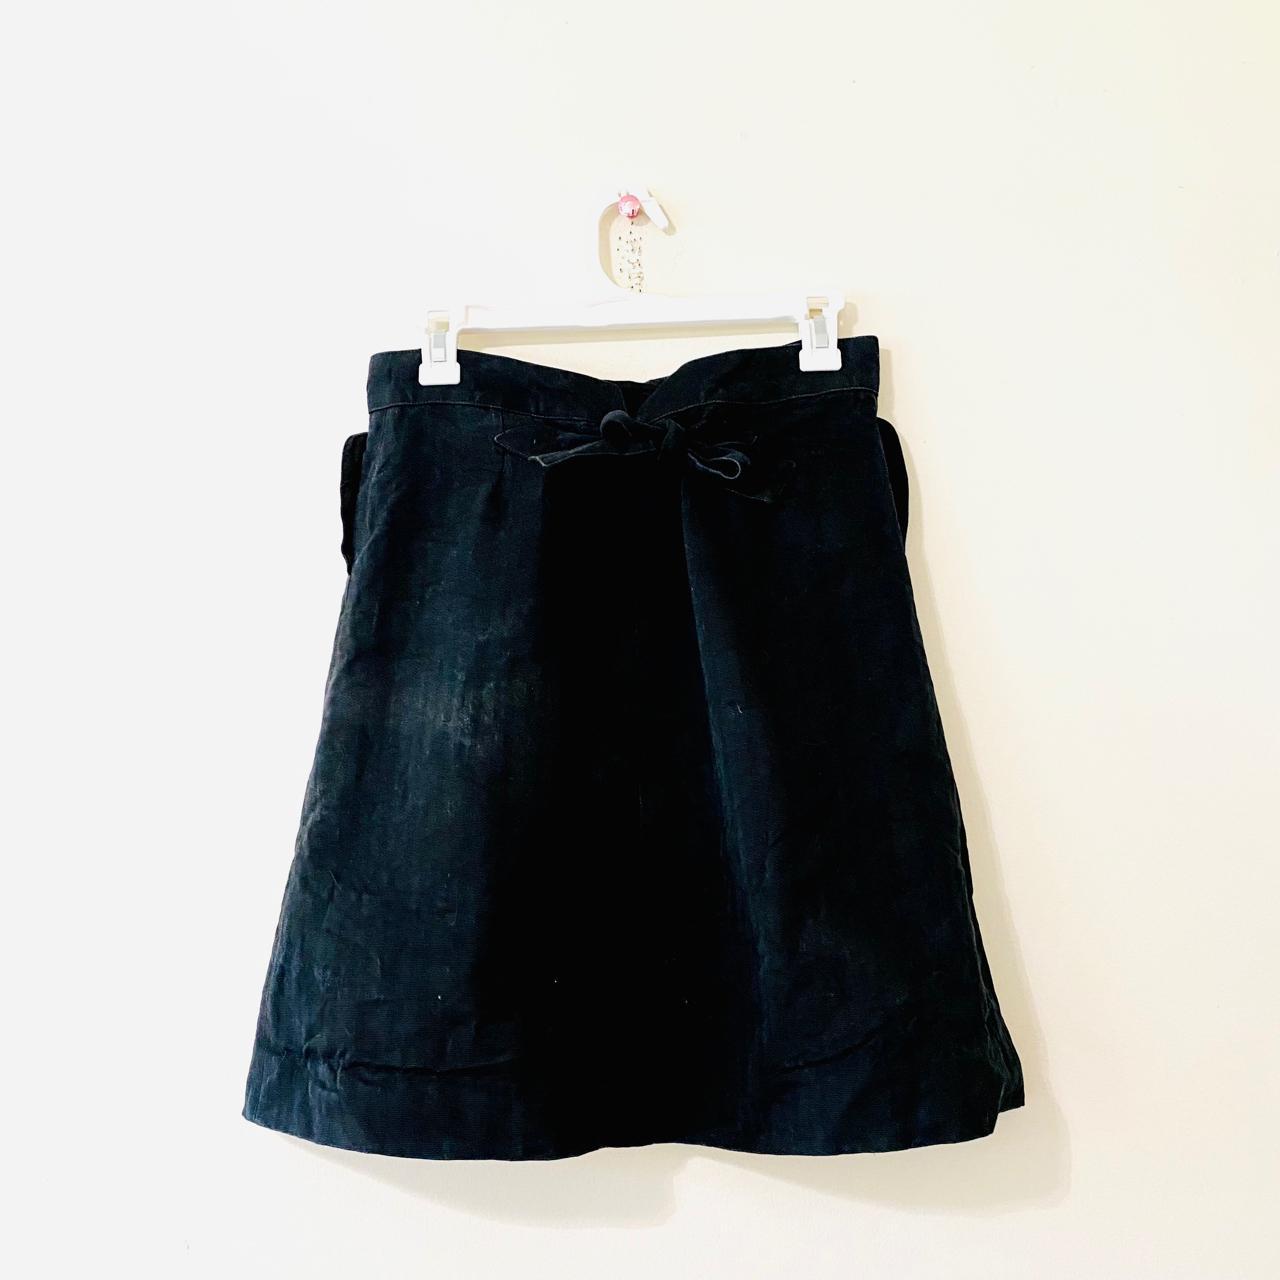 Chloé Women's Black Skirt